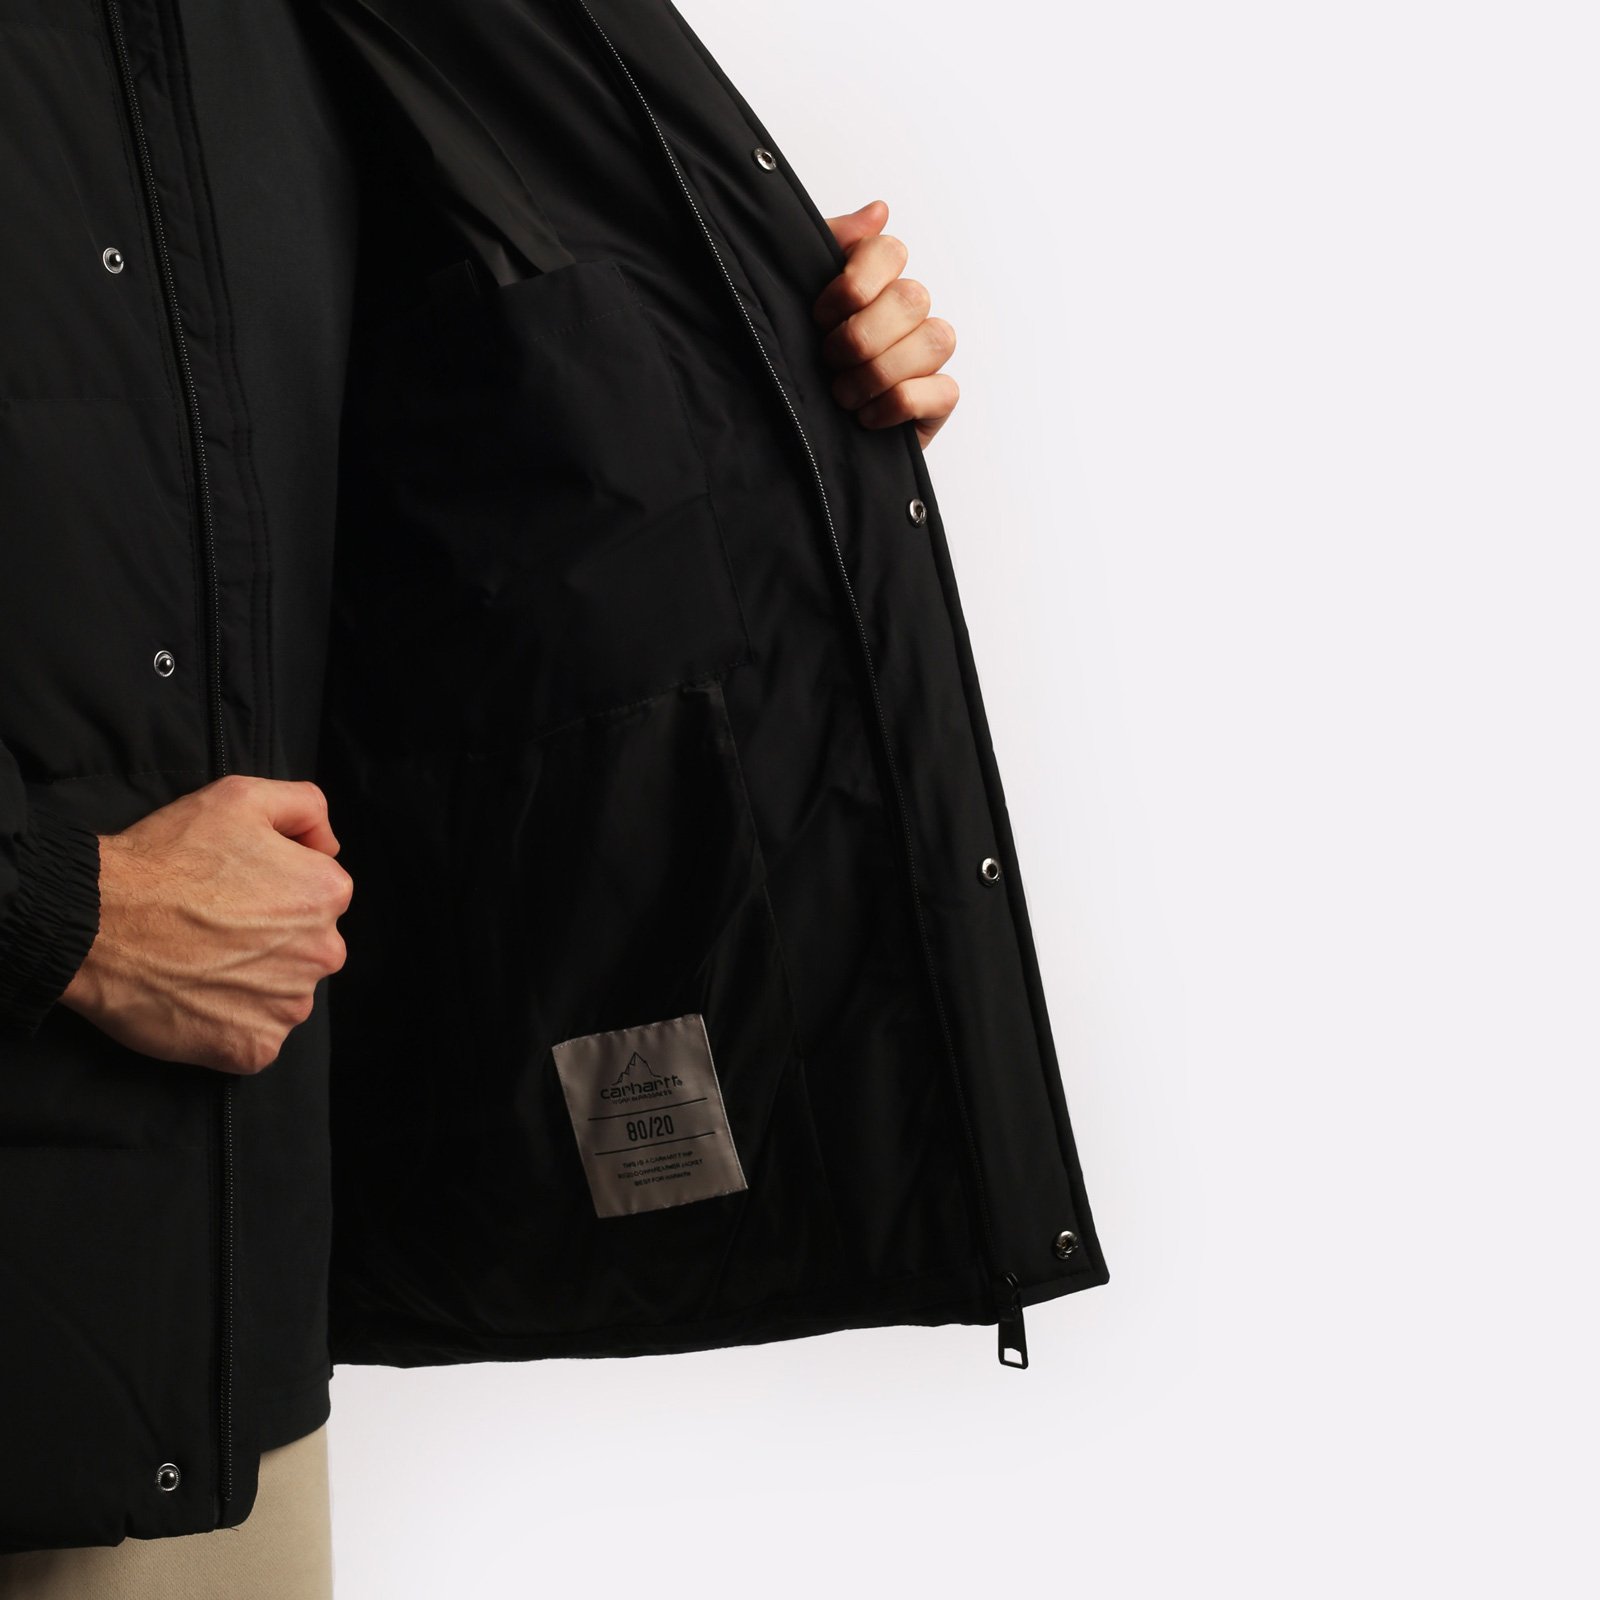 мужская черная куртка Carhartt WIP Danville Jacket I029450-black/wht - цена, описание, фото 5